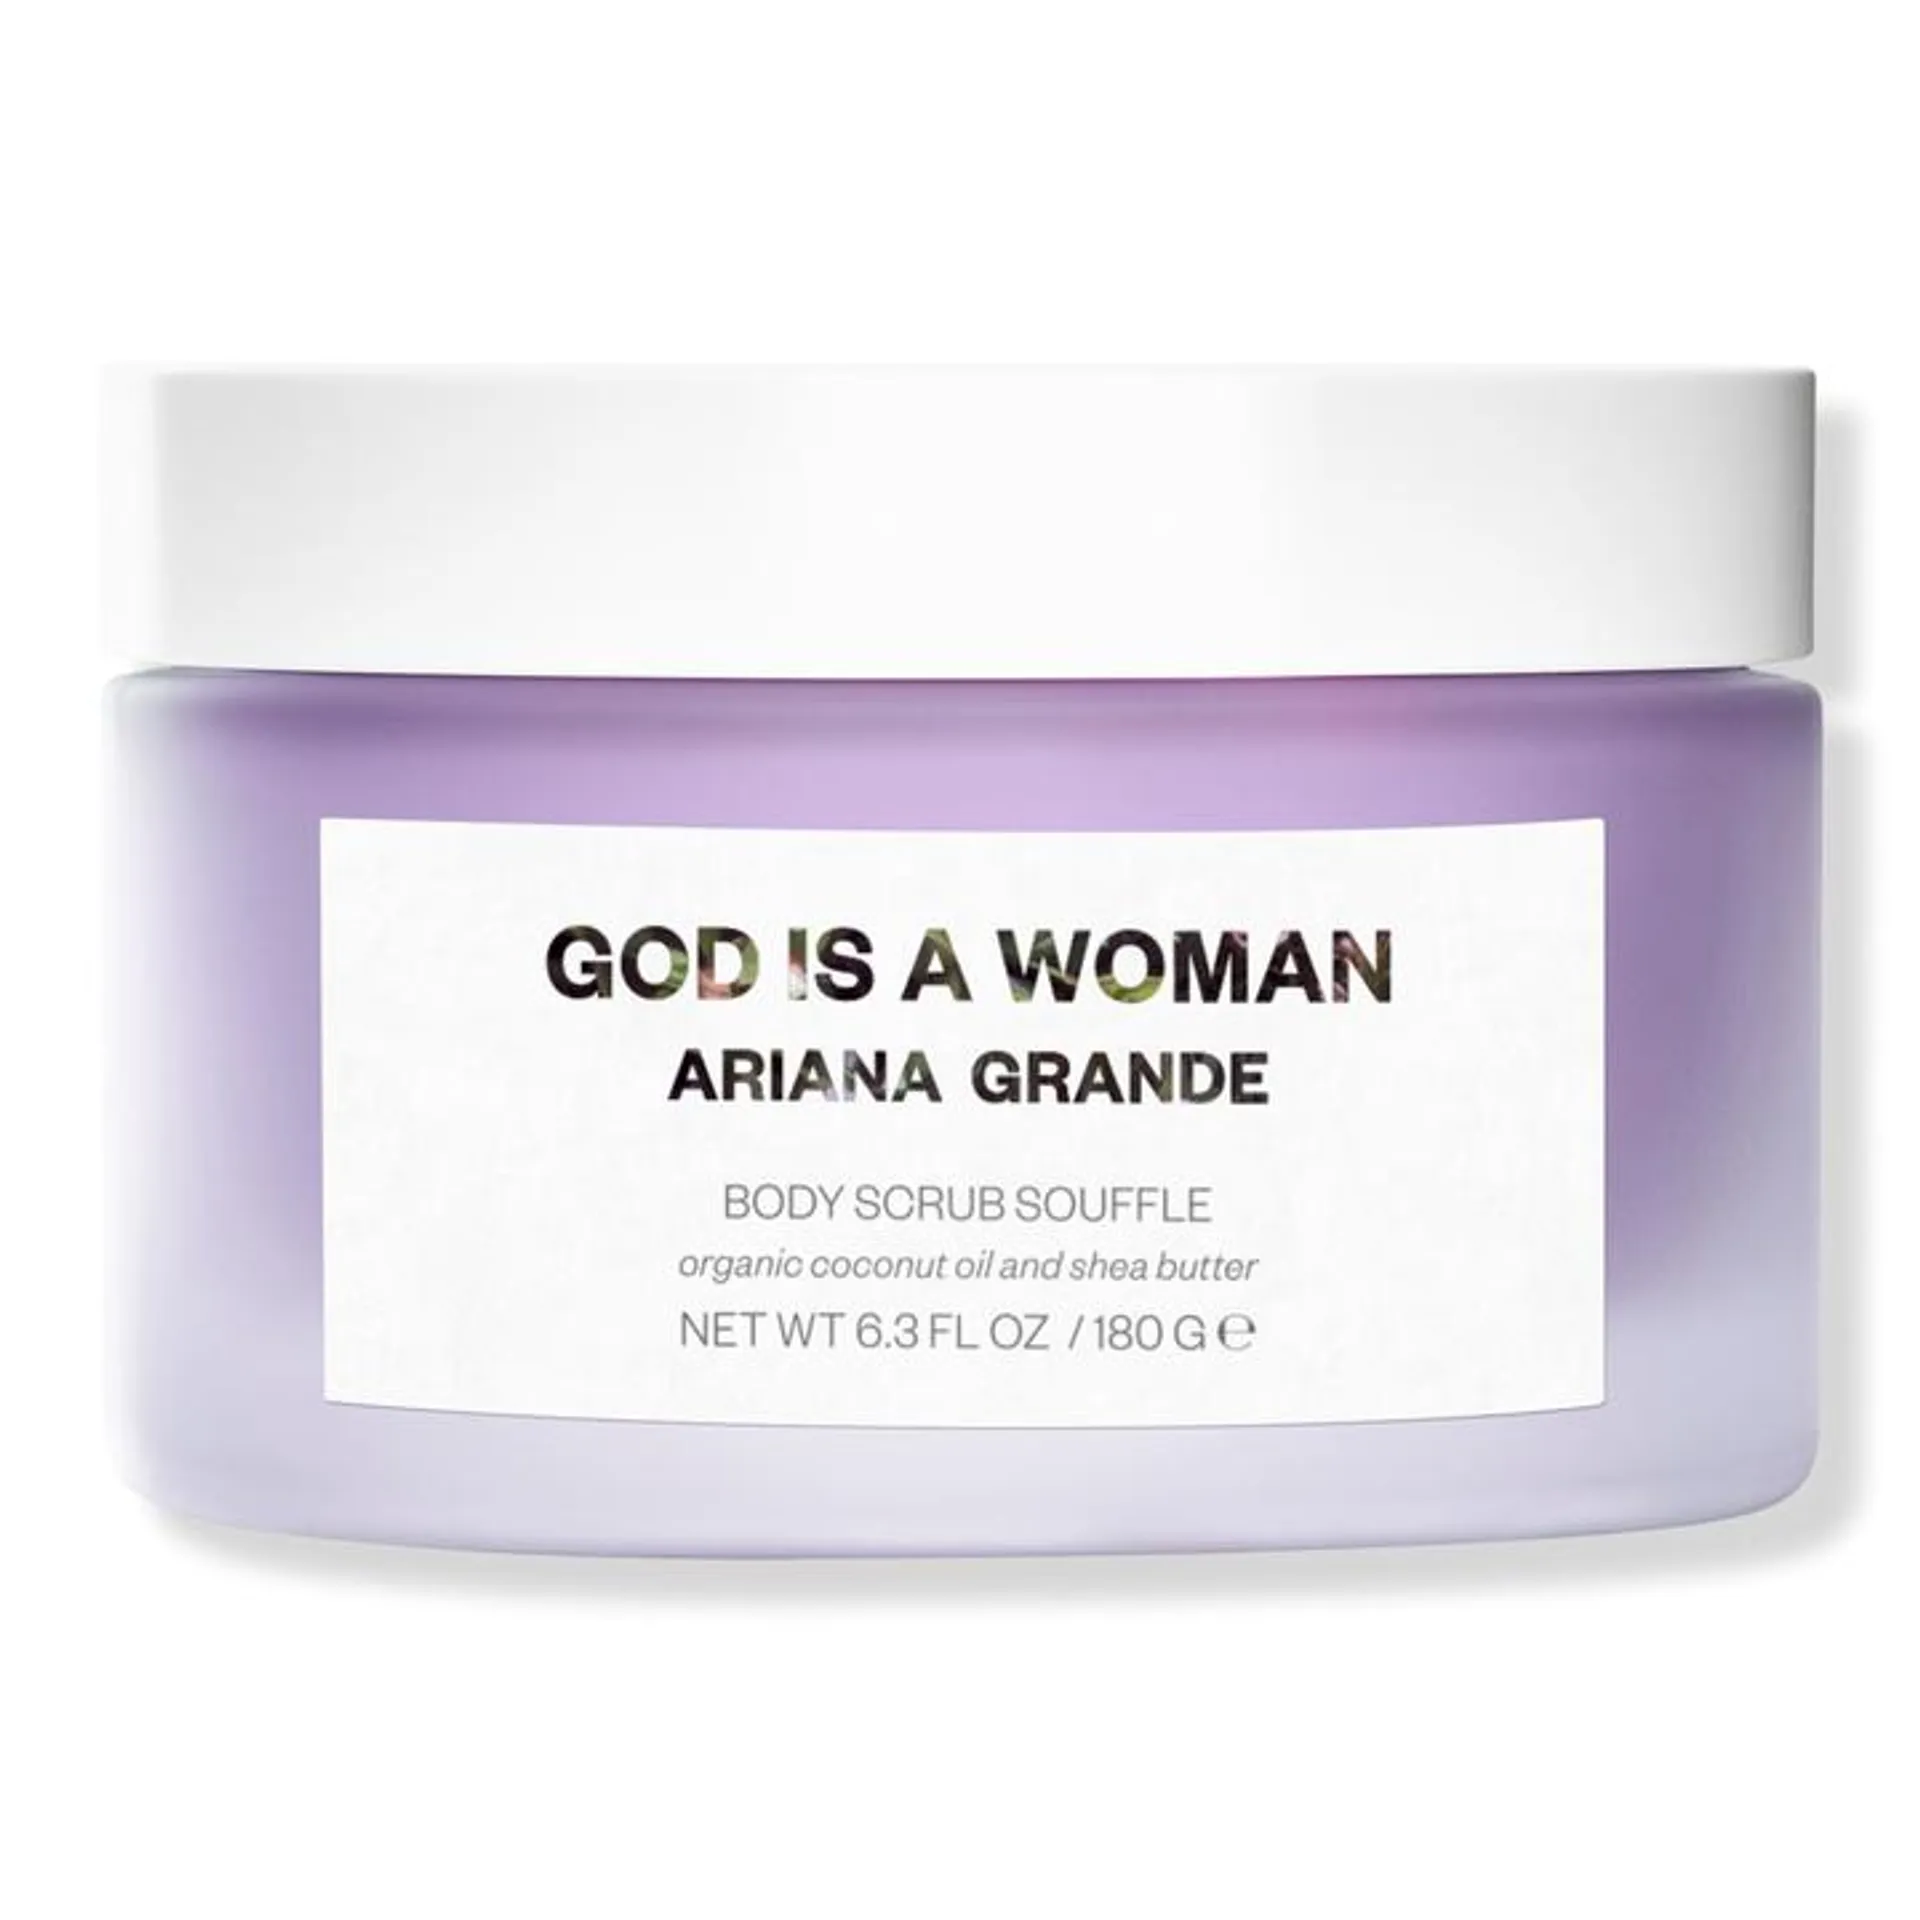 God Is A Woman Body Scrub Soufflé